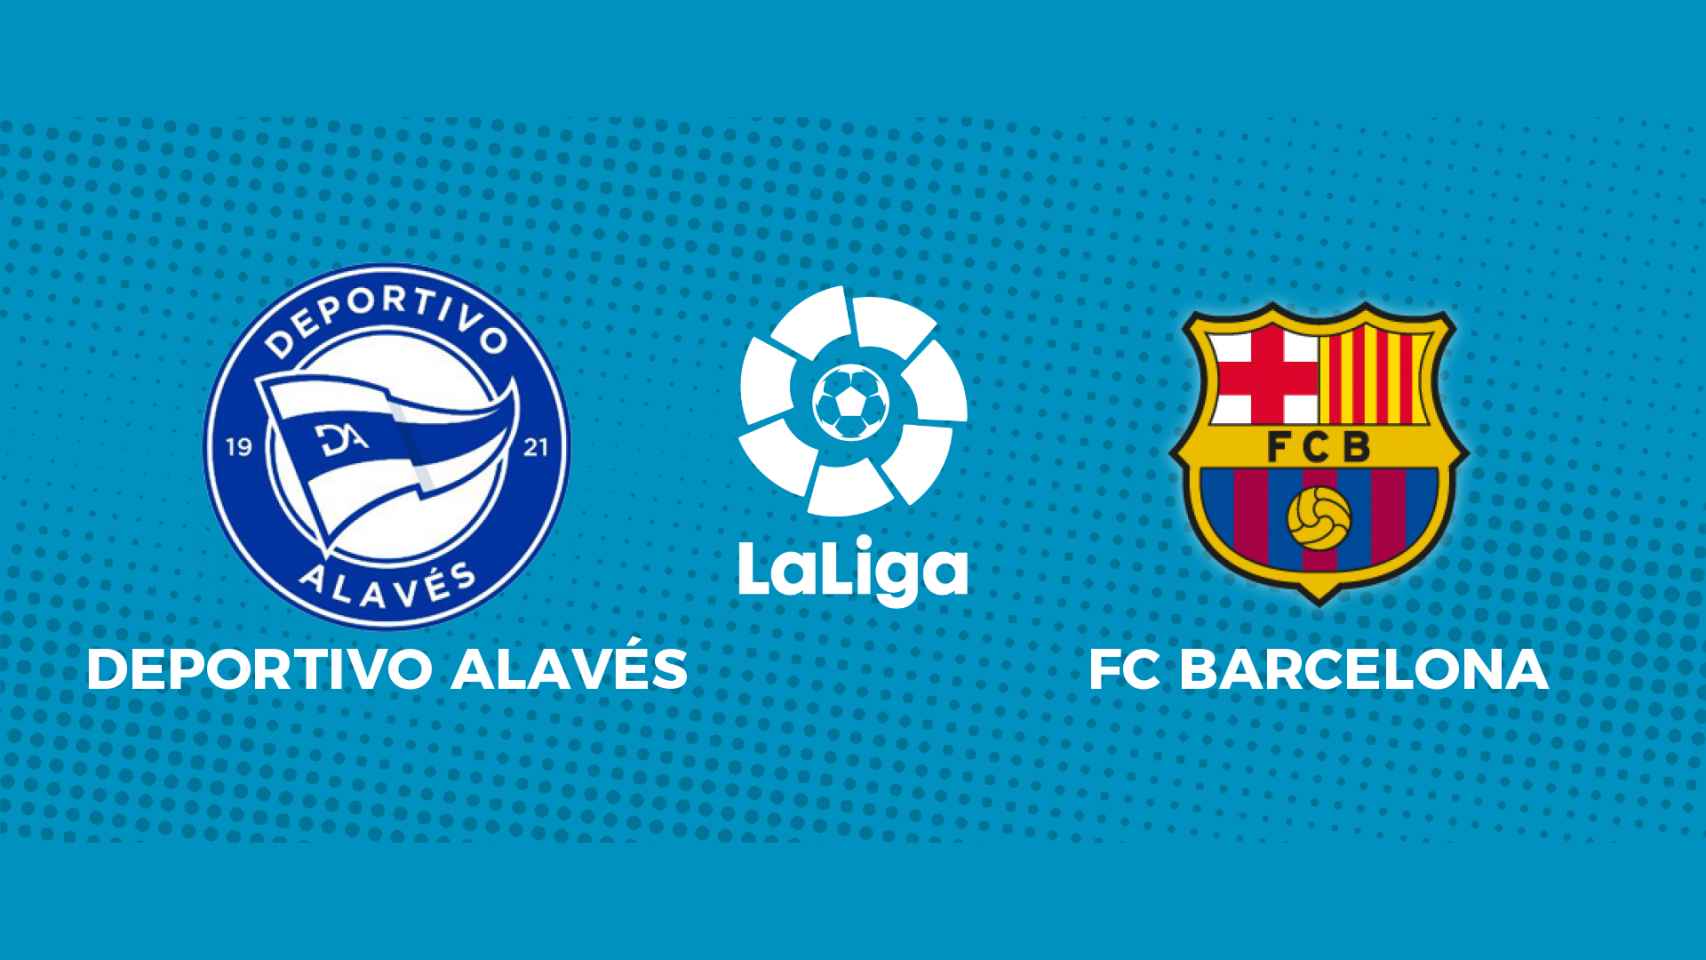 Deportivo Alavés - FC Barcelona: siga el partido de La Liga, en directo